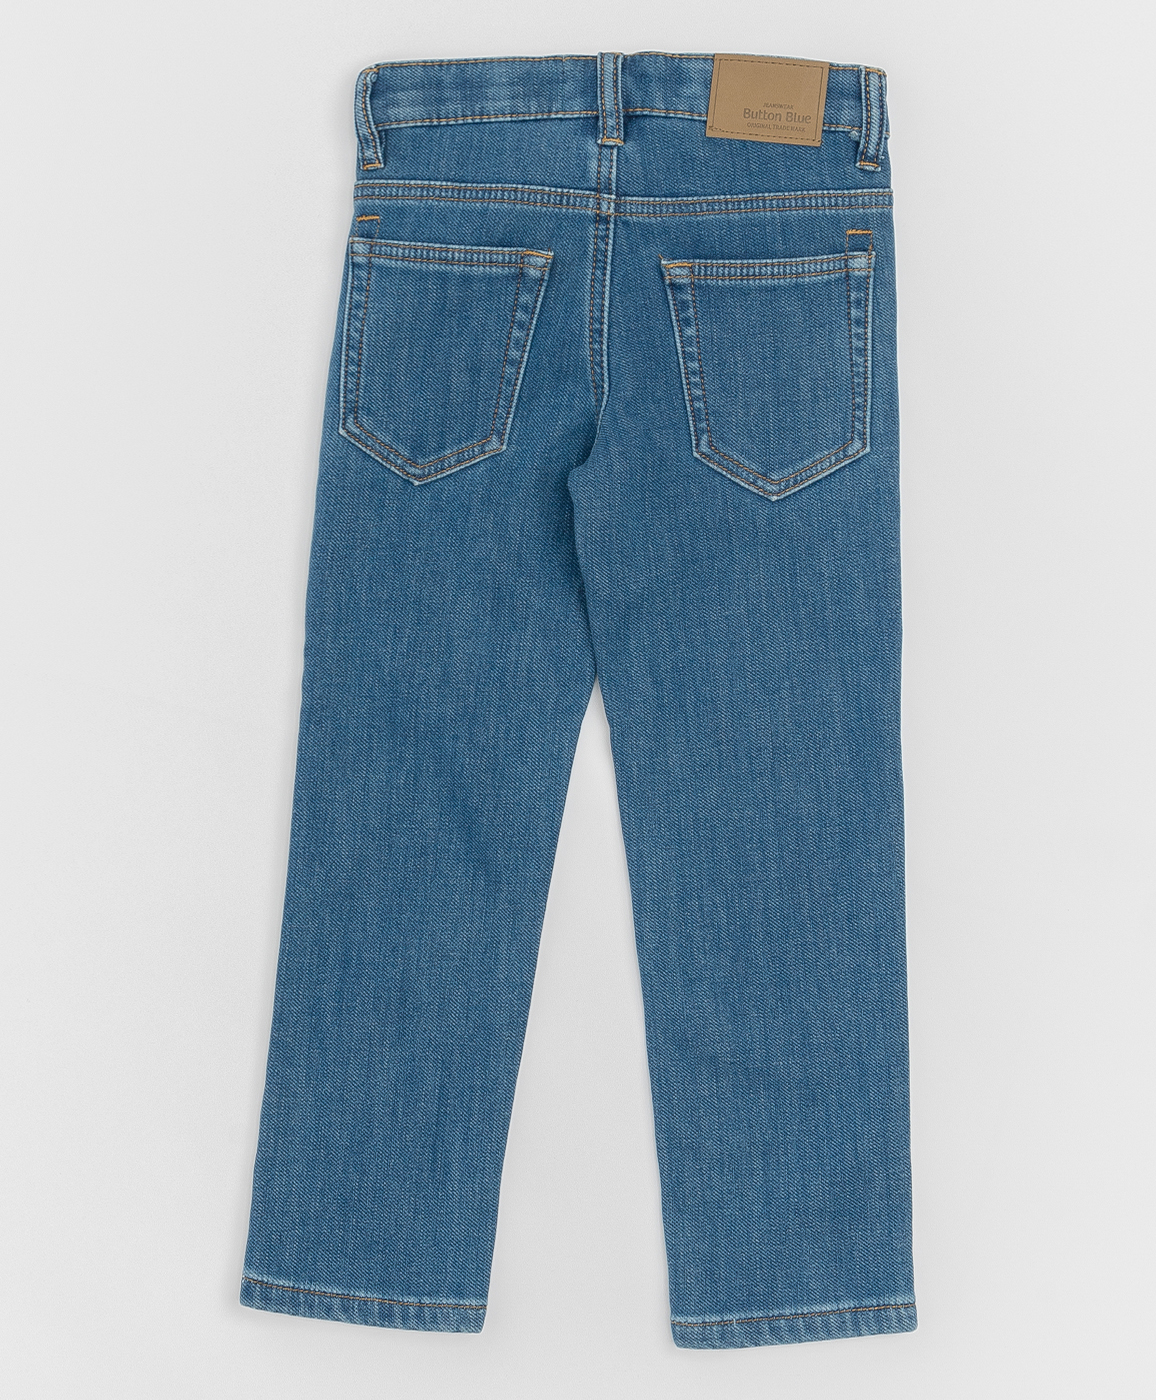 Синие джинсы, бондированные флисом Button Blue 220BBBMC6401D100, размер 110, цвет синий regular fit / прямые - фото 2